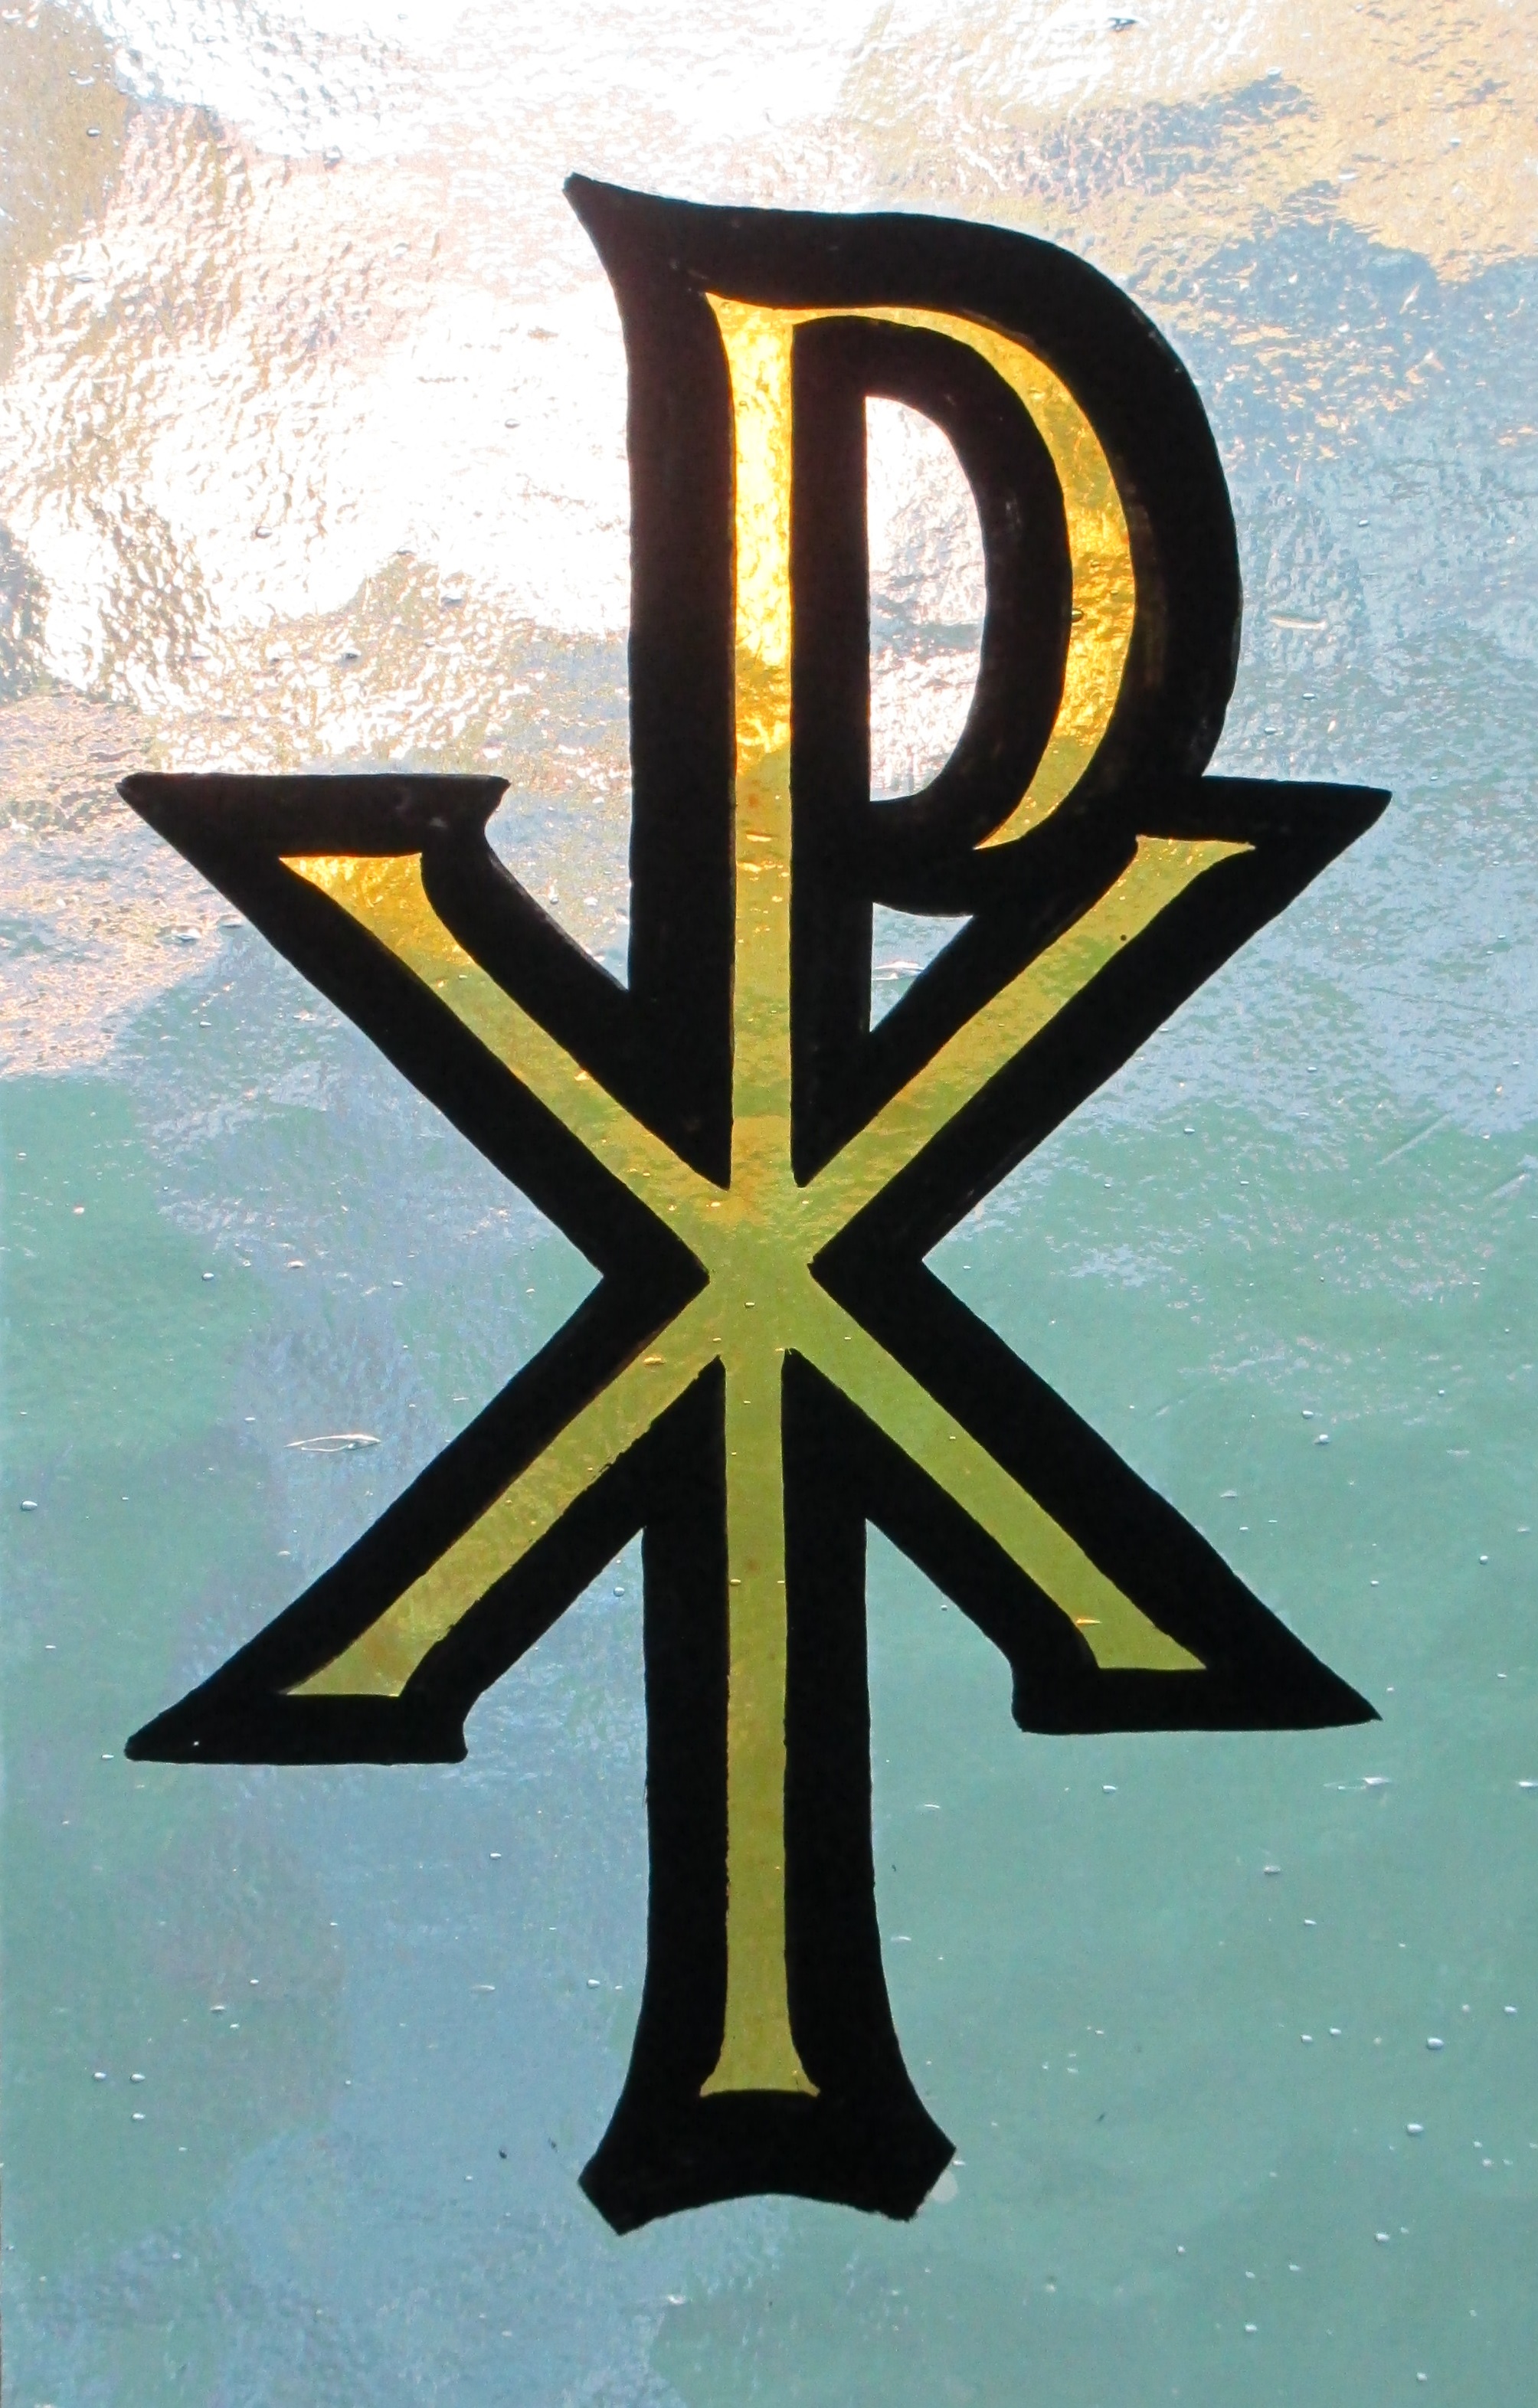 Catholic Religion Symbols